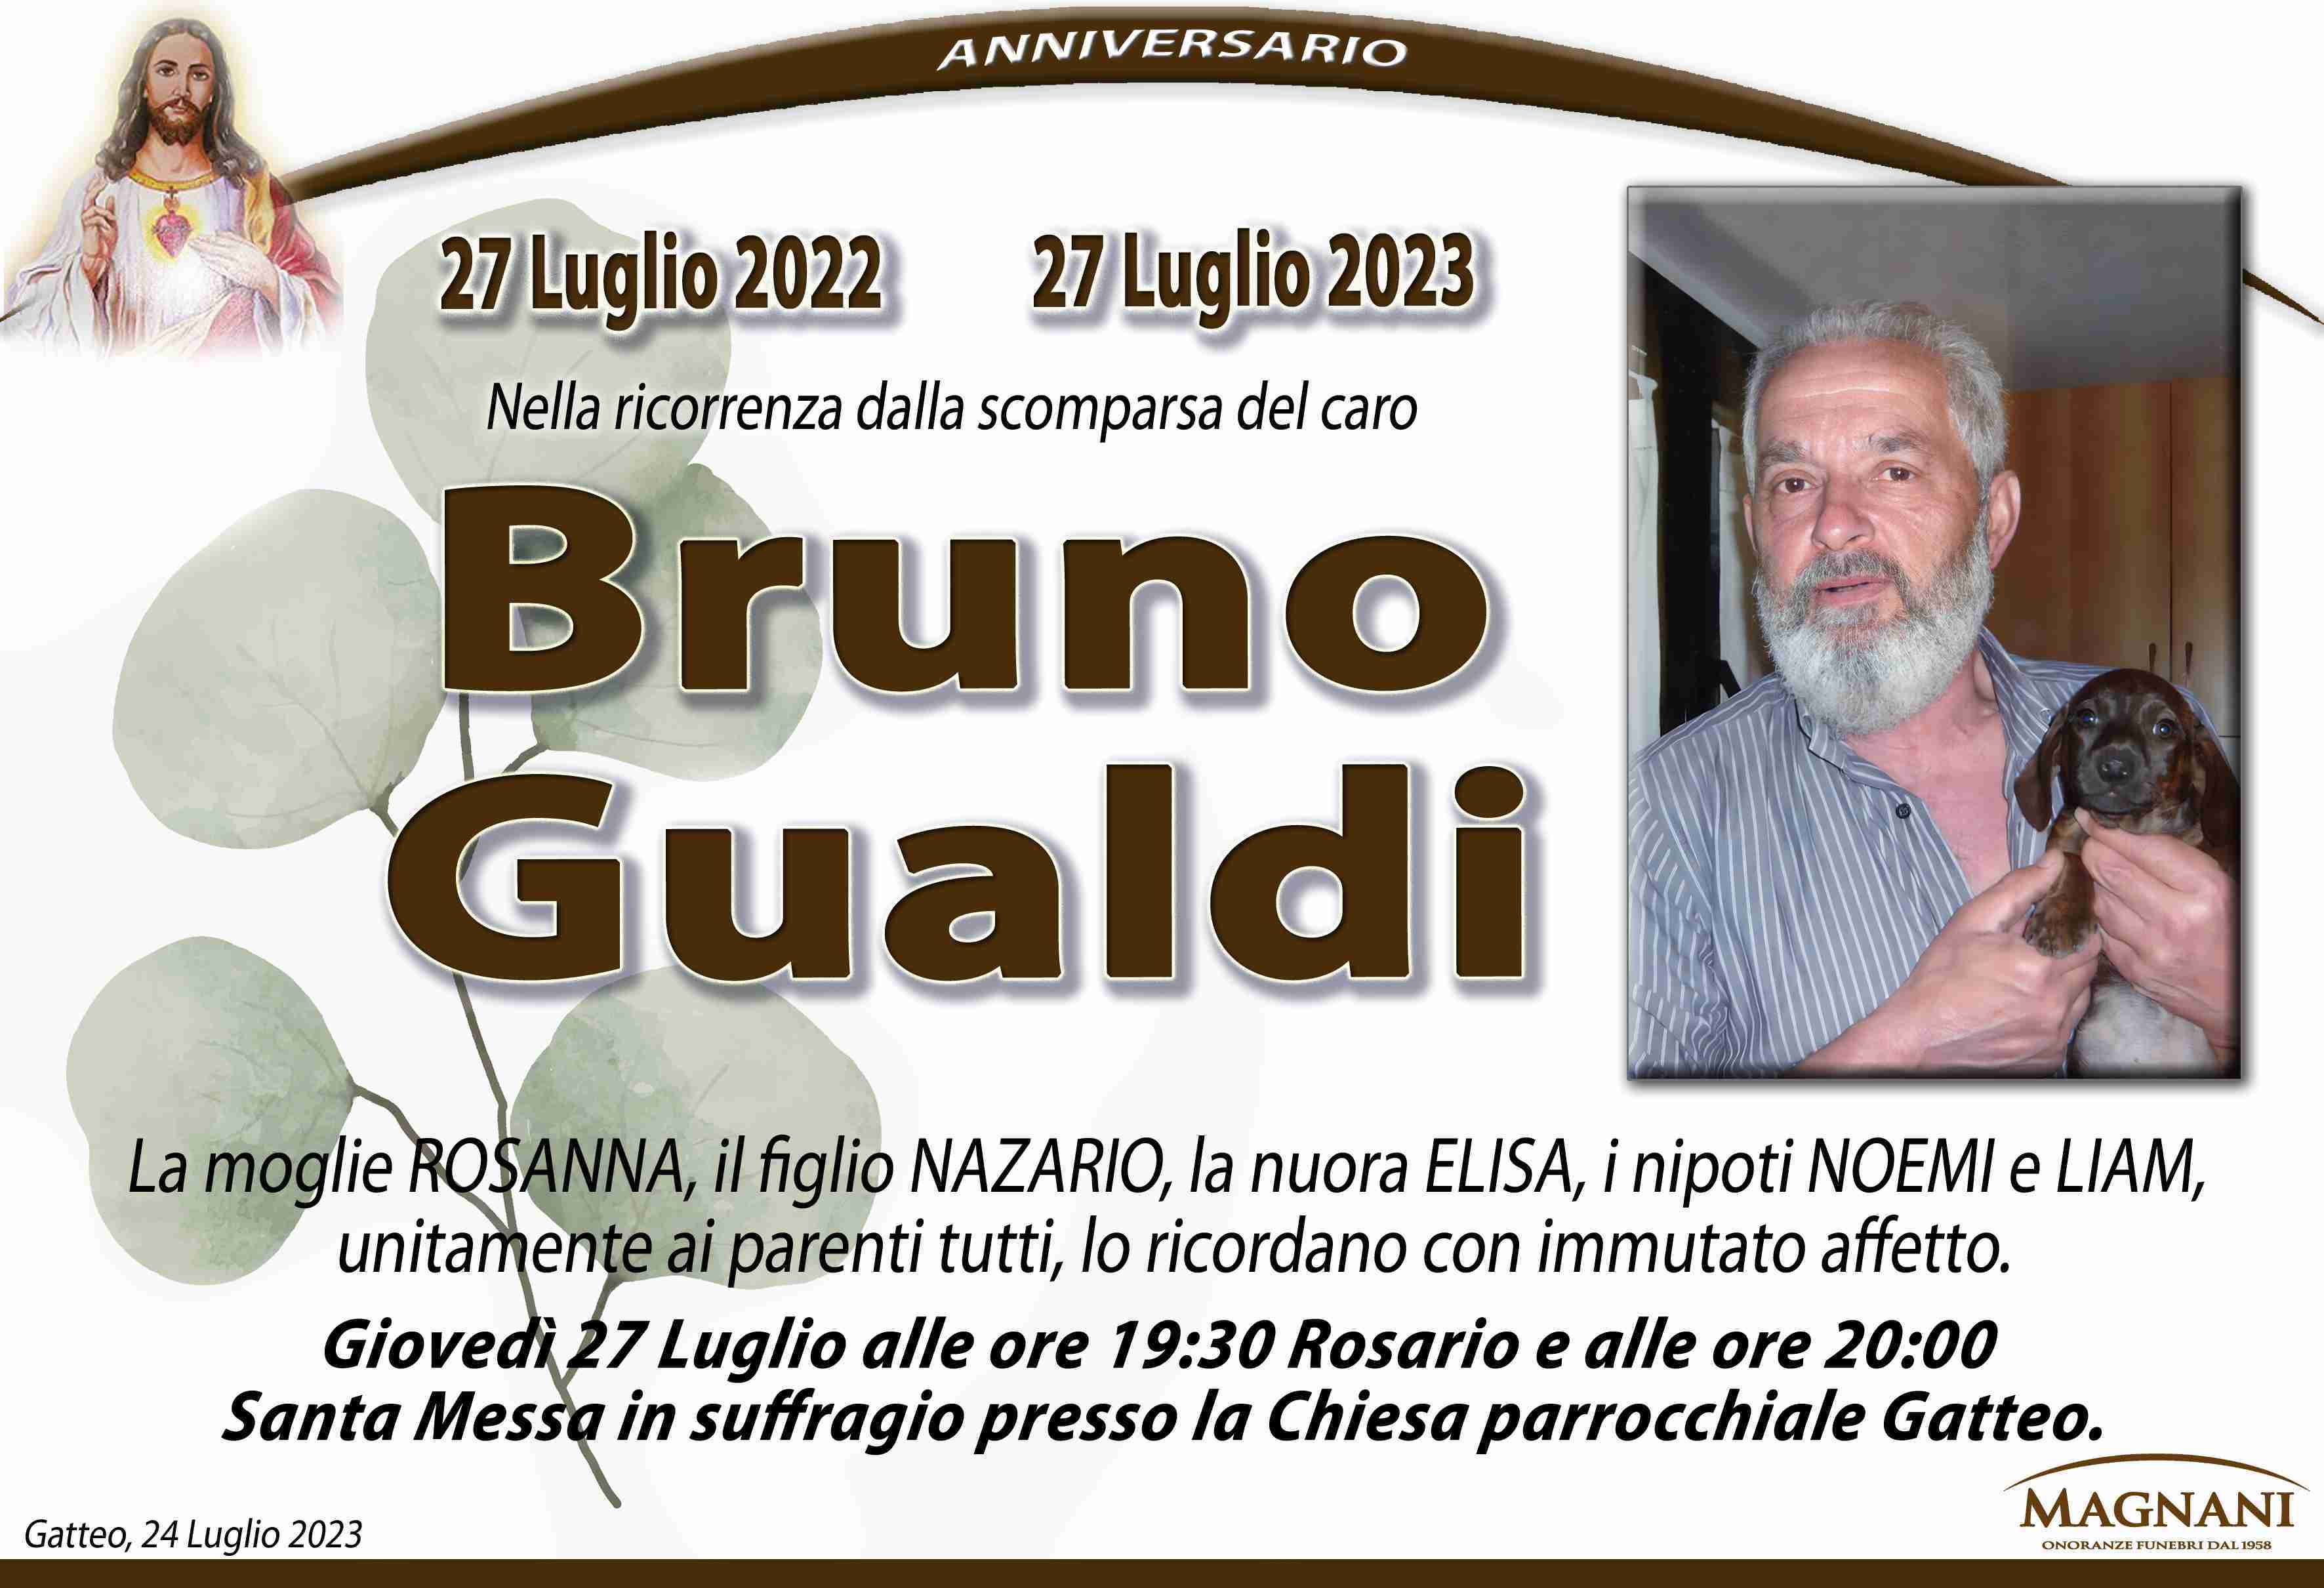 Bruno Gualdi